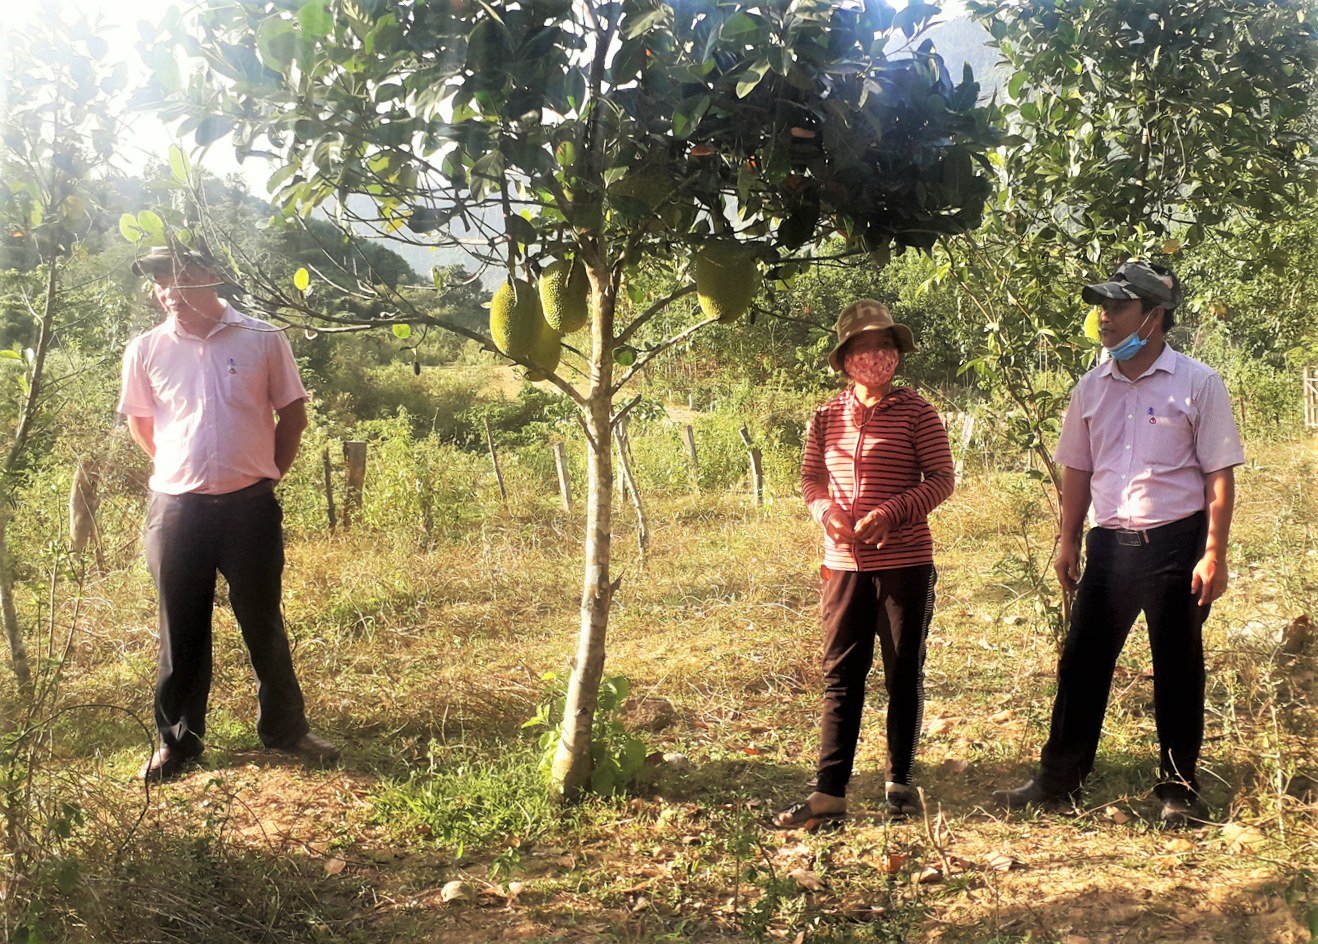 Mô hình kinh tế chăn nuôi kết hợp trồng cây ăn quả của Alăng Thị Di đem lại hiệu quả thiết thực với cộng đồng. Ảnh: ALĂNG NGƯỚC